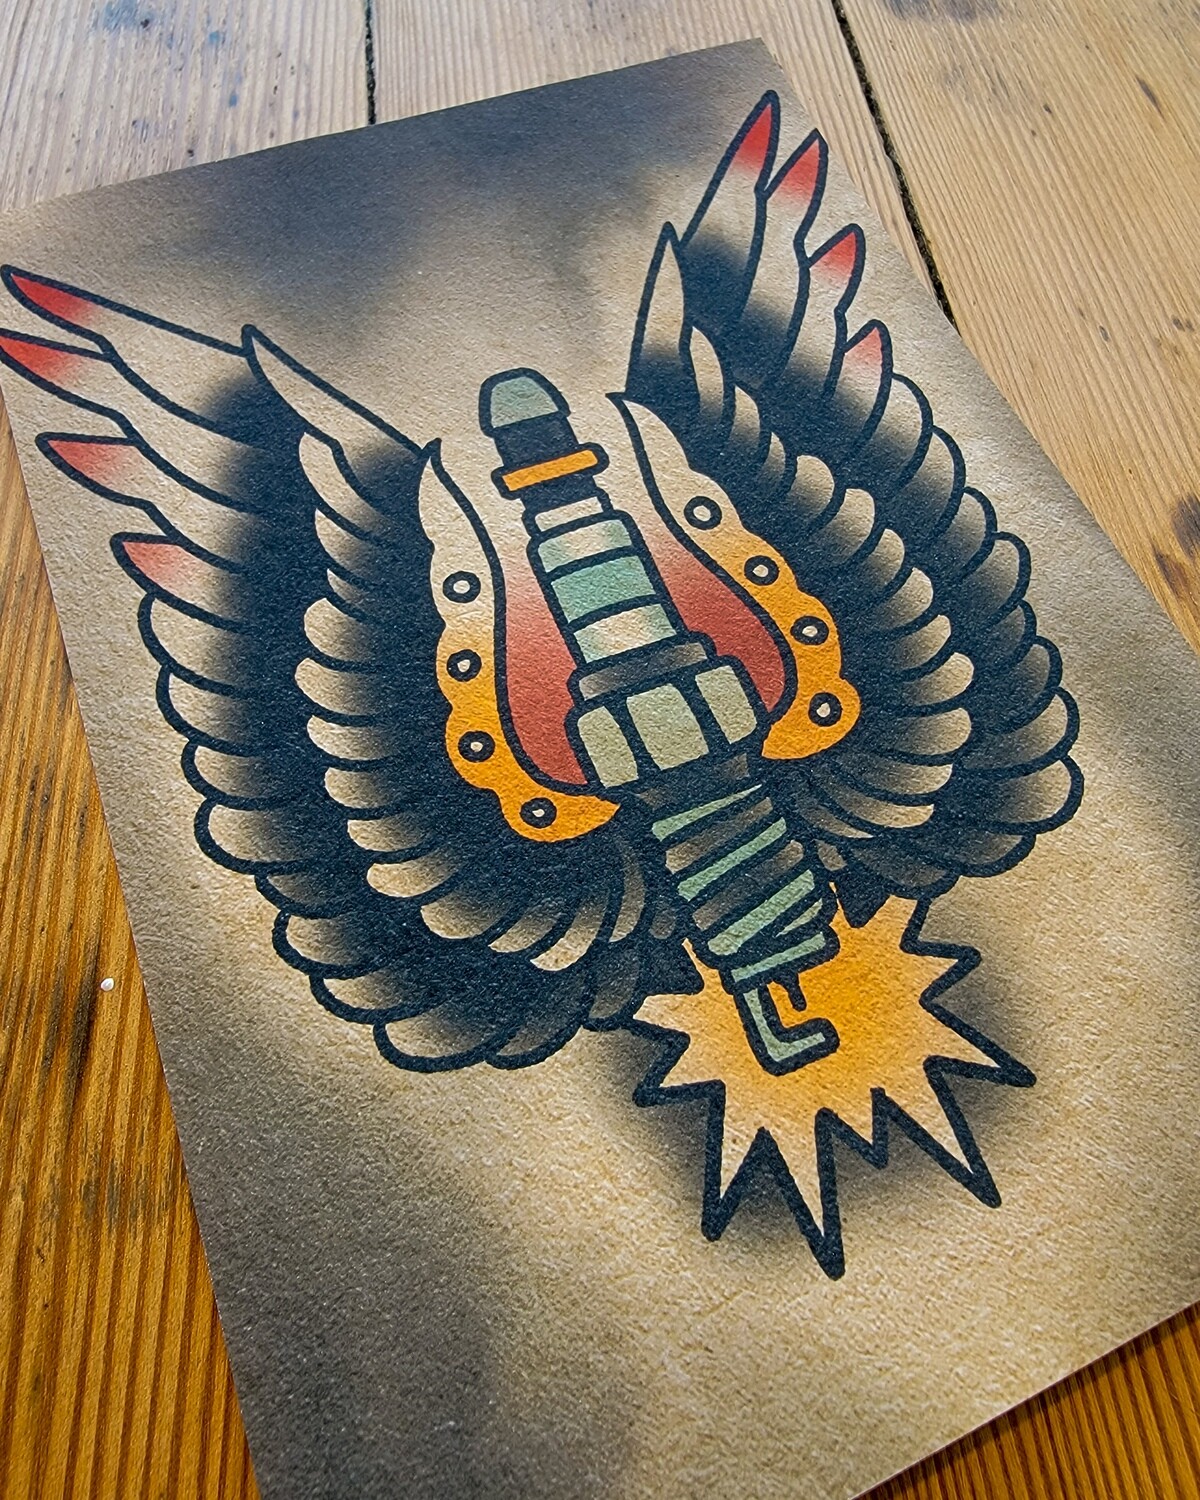 ROODBAARD tattoos and artwork